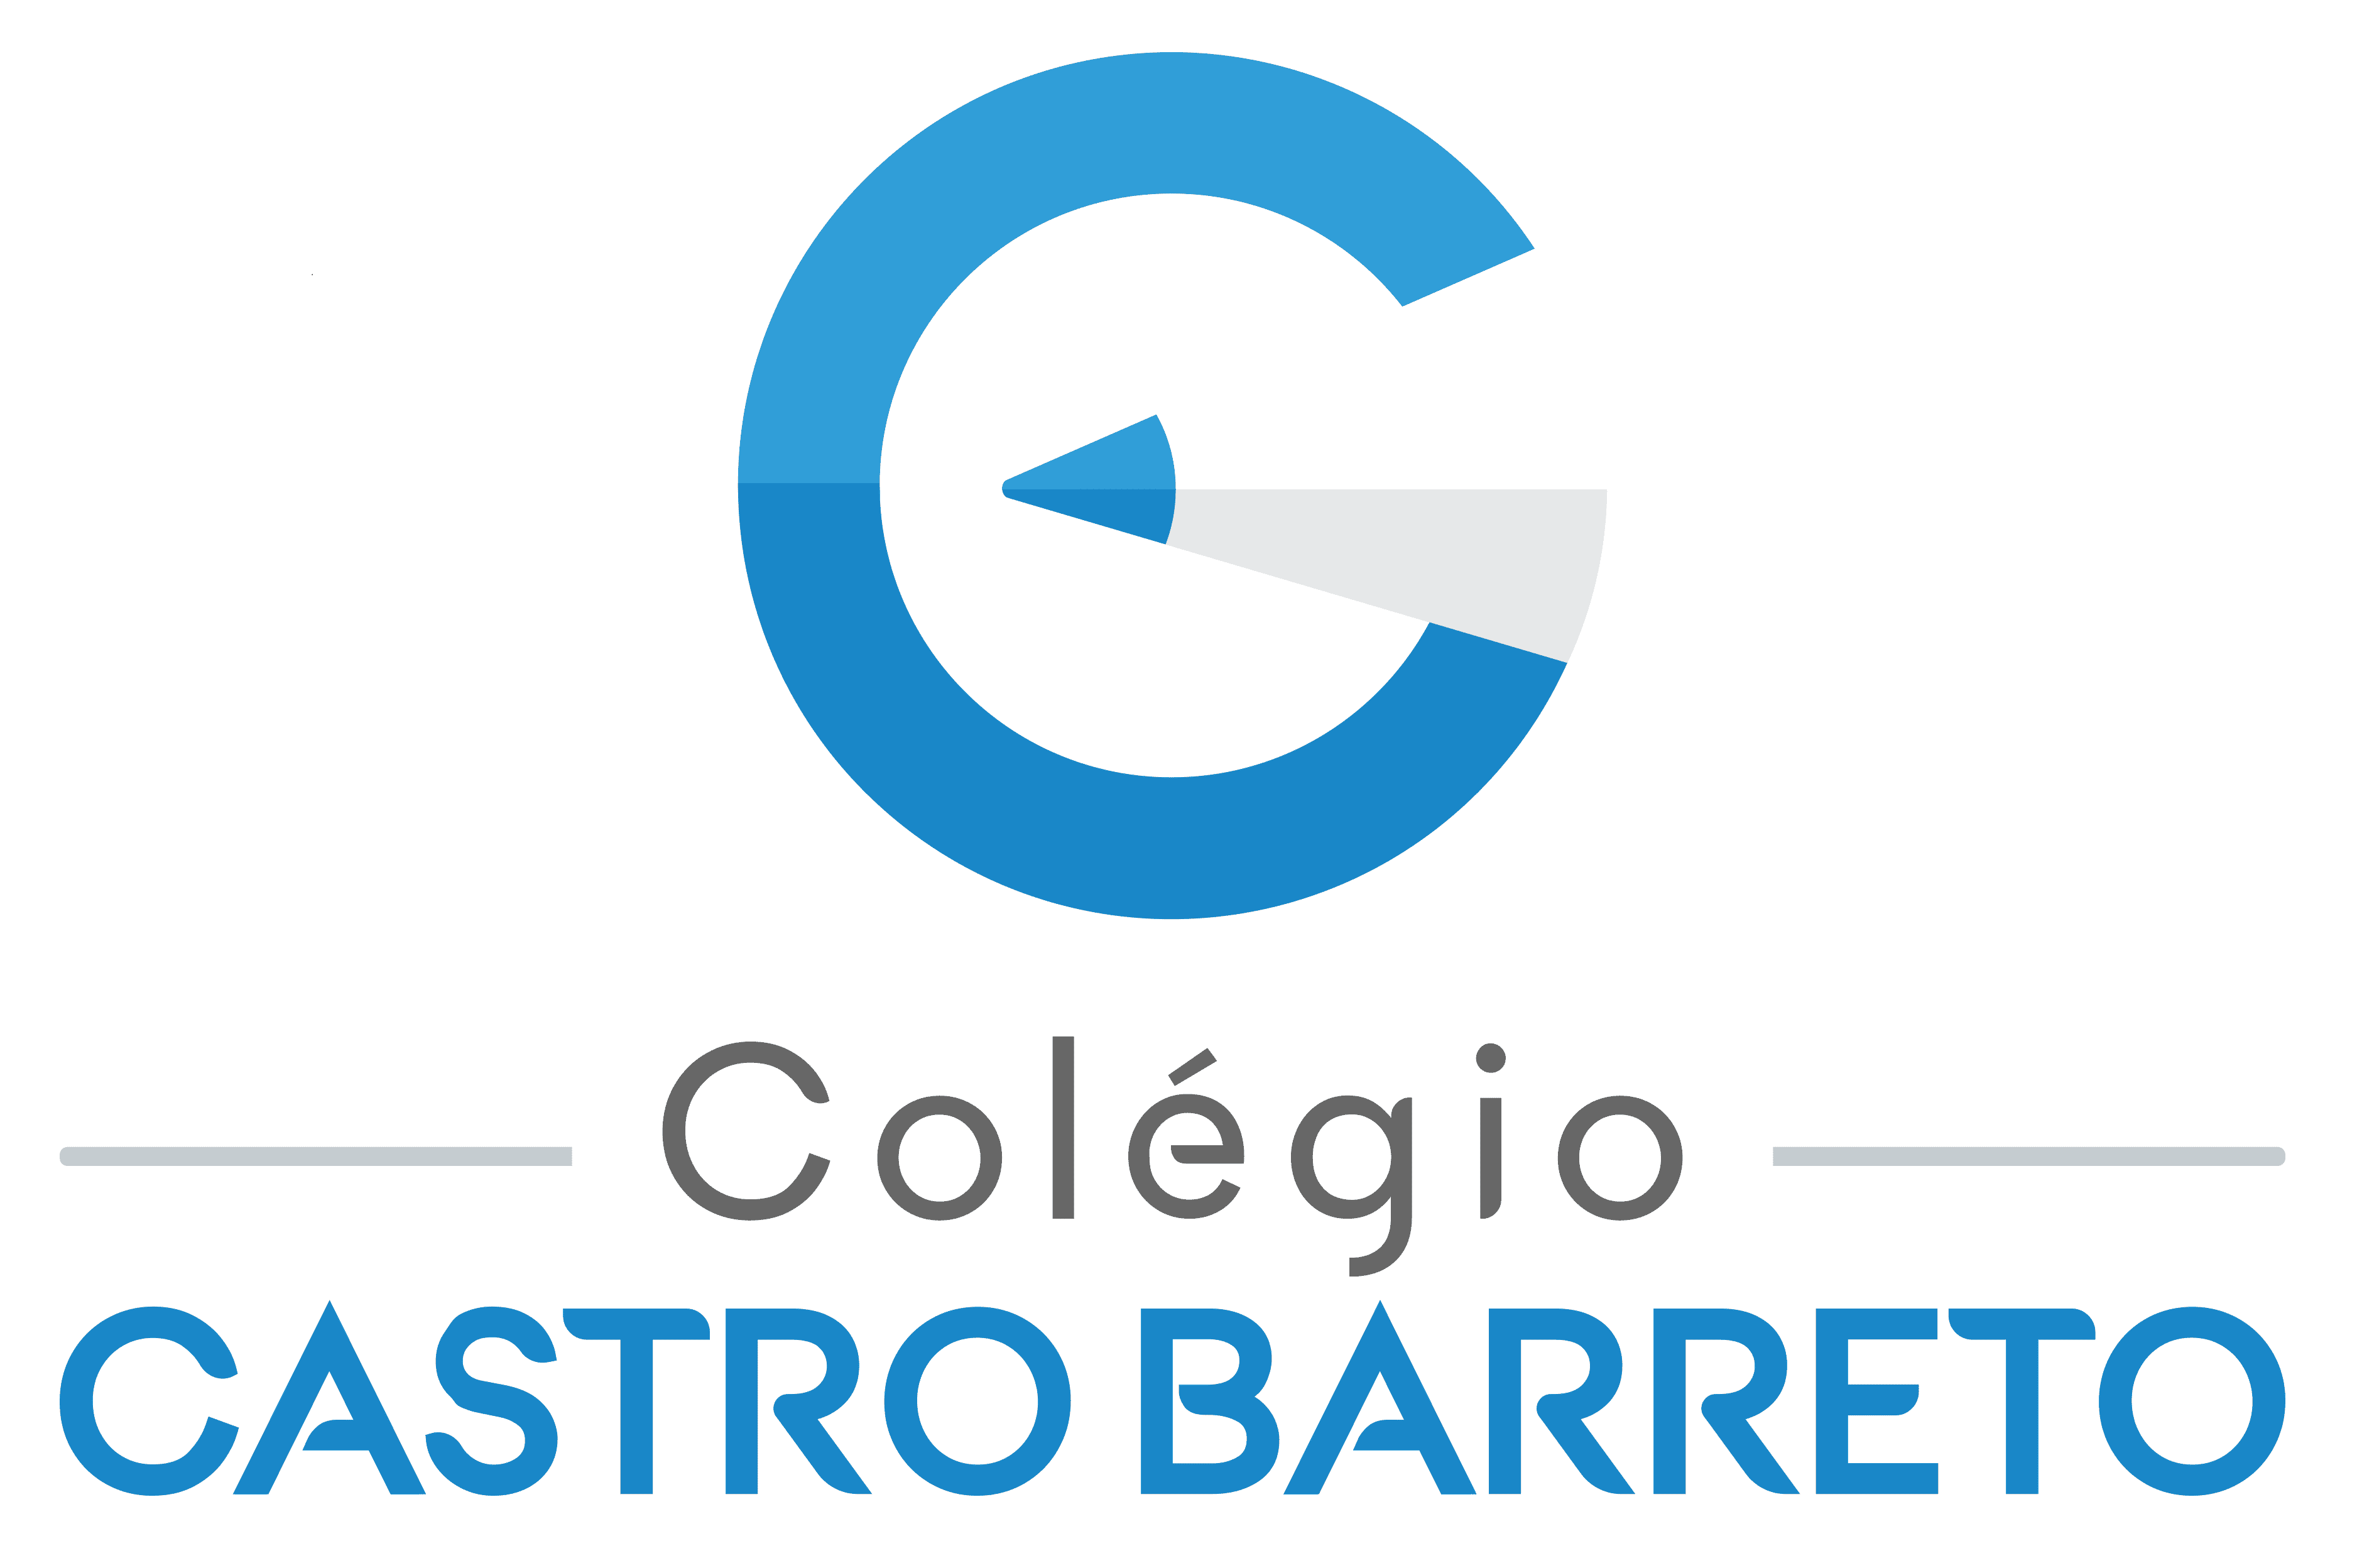  Colégio Castro Barreto 